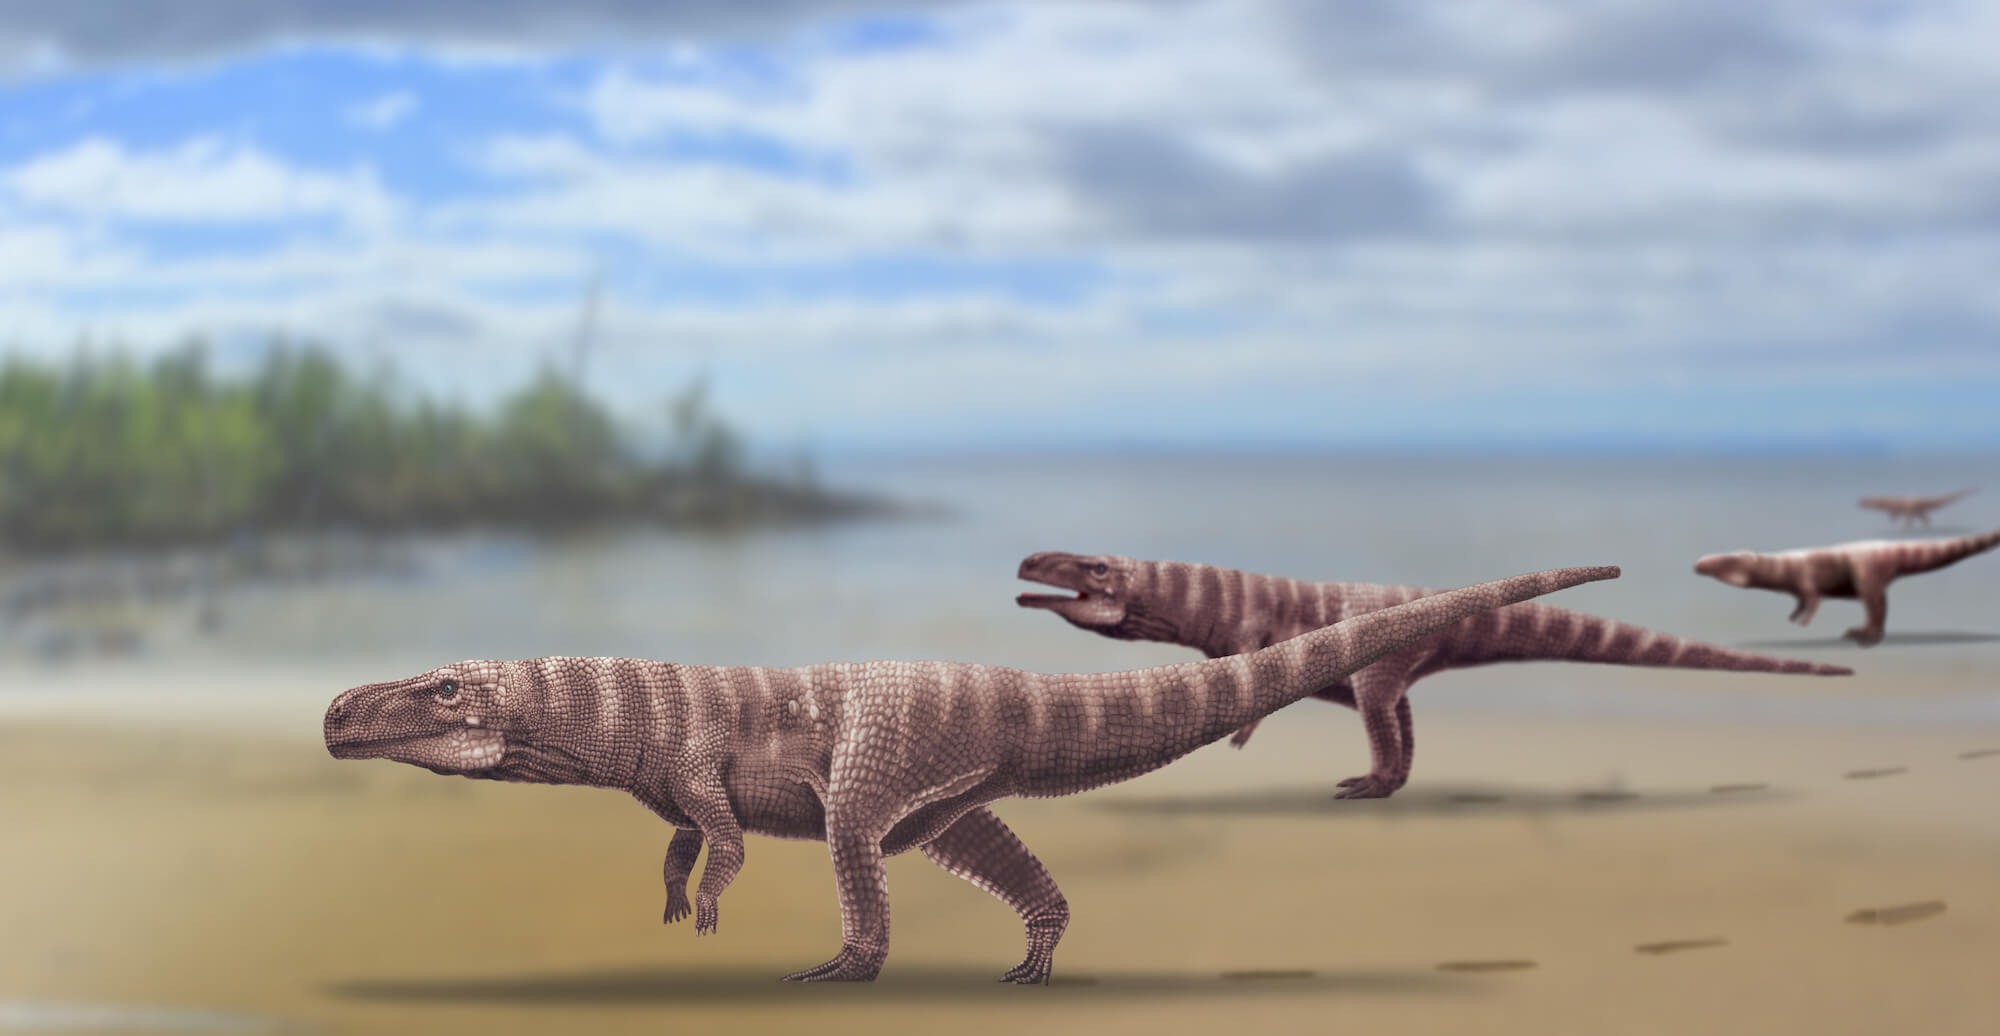 Milhões de anos atrás, os ancestrais de crocodilos andavam sobre duas pernas